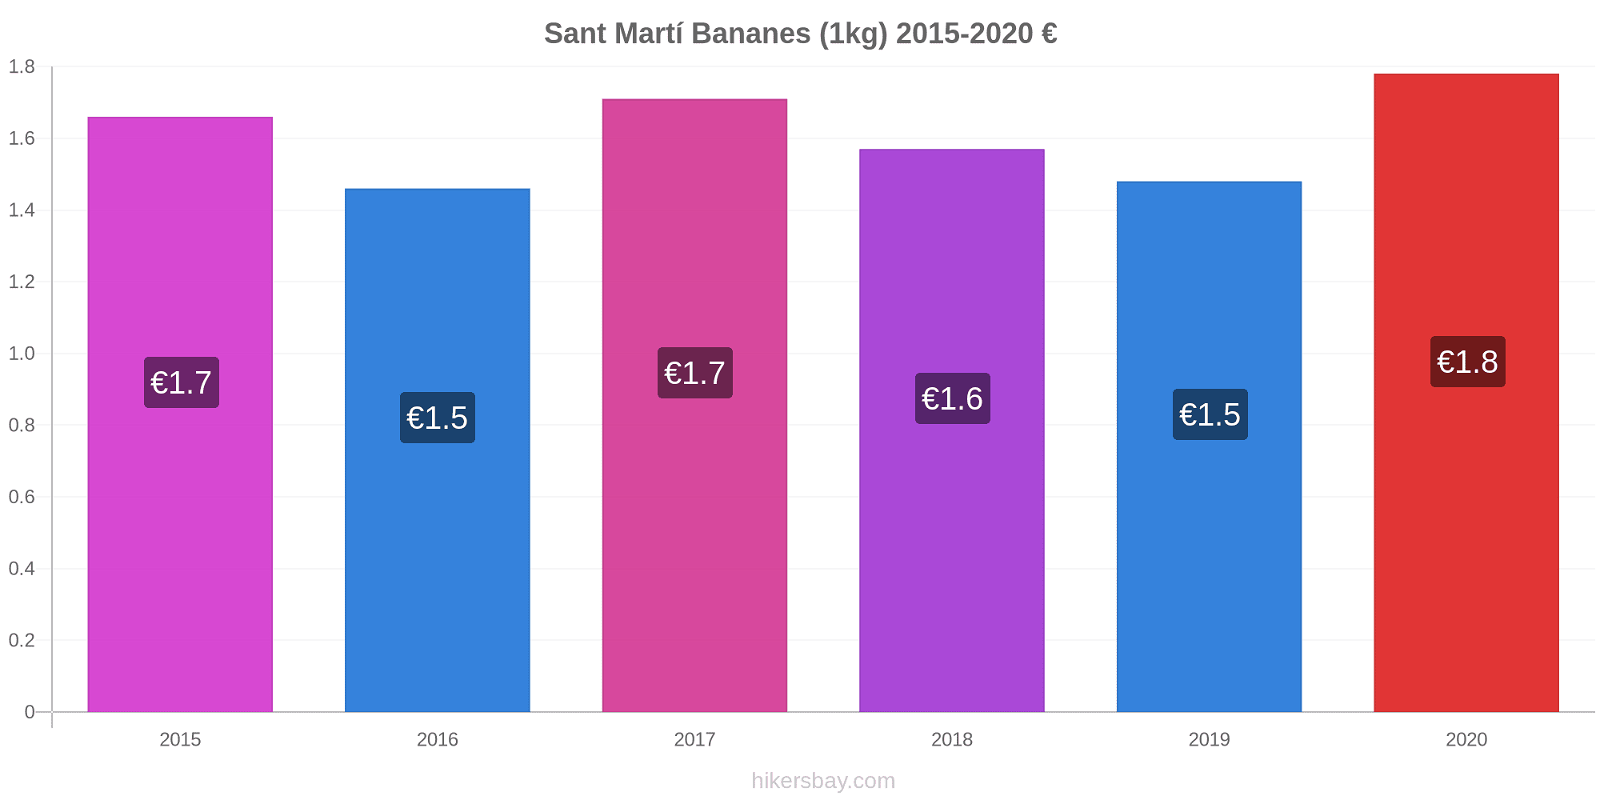 Sant Martí changements de prix Bananes (1kg) hikersbay.com